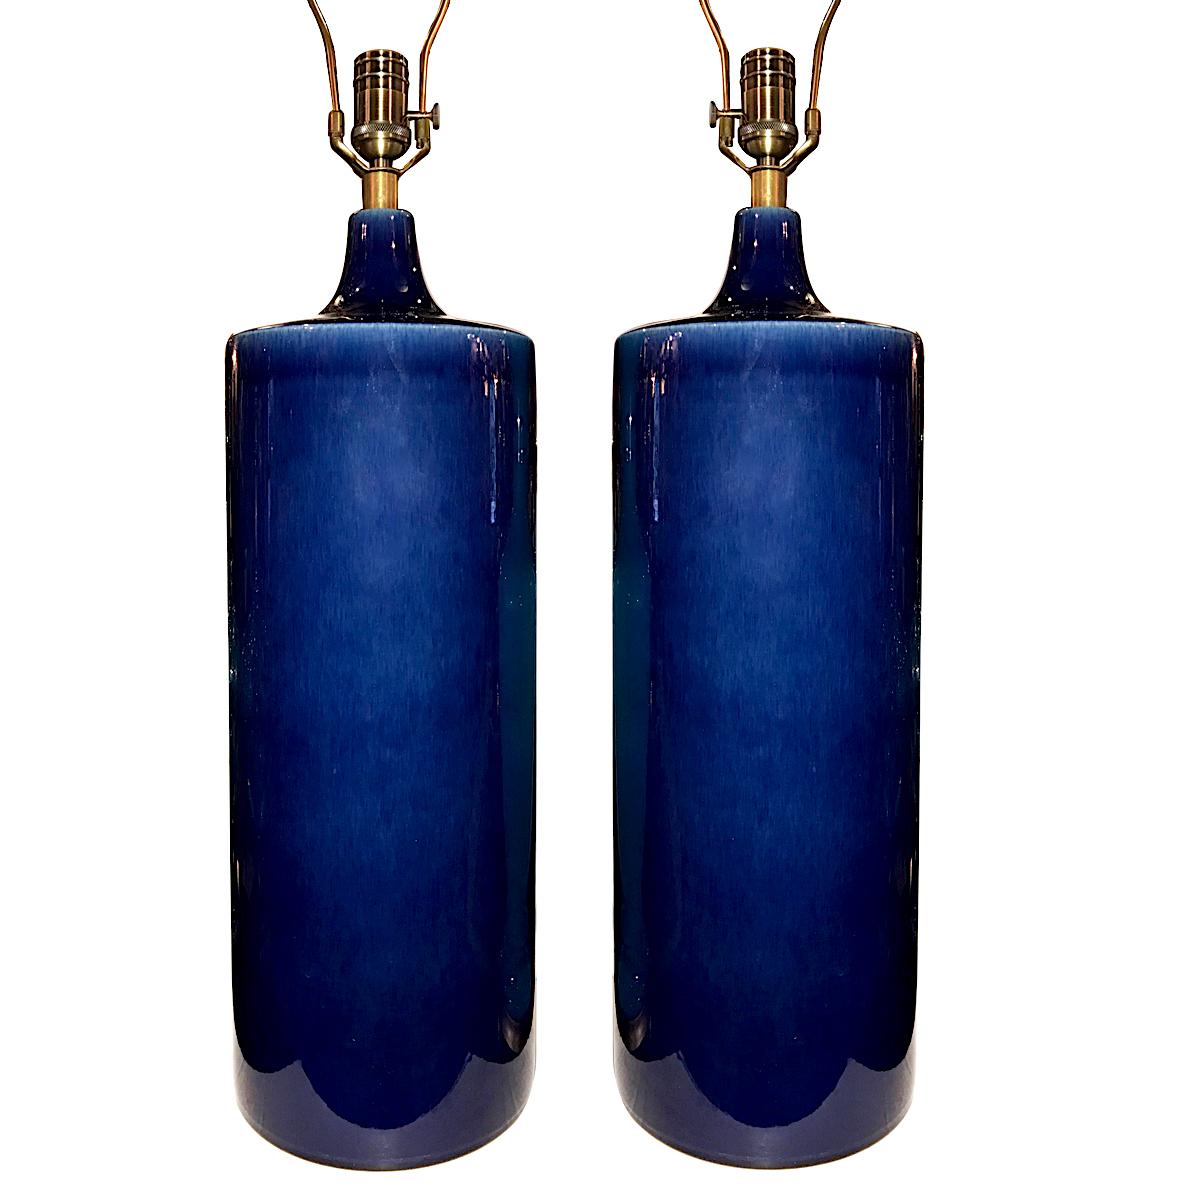 Paire de lampes de table italiennes en porcelaine émaillée bleu cobalt datant des années 1960.

Mesures :
Hauteur du corps : 22.5
Hauteur jusqu'à l'appui de l'abat-jour : 34